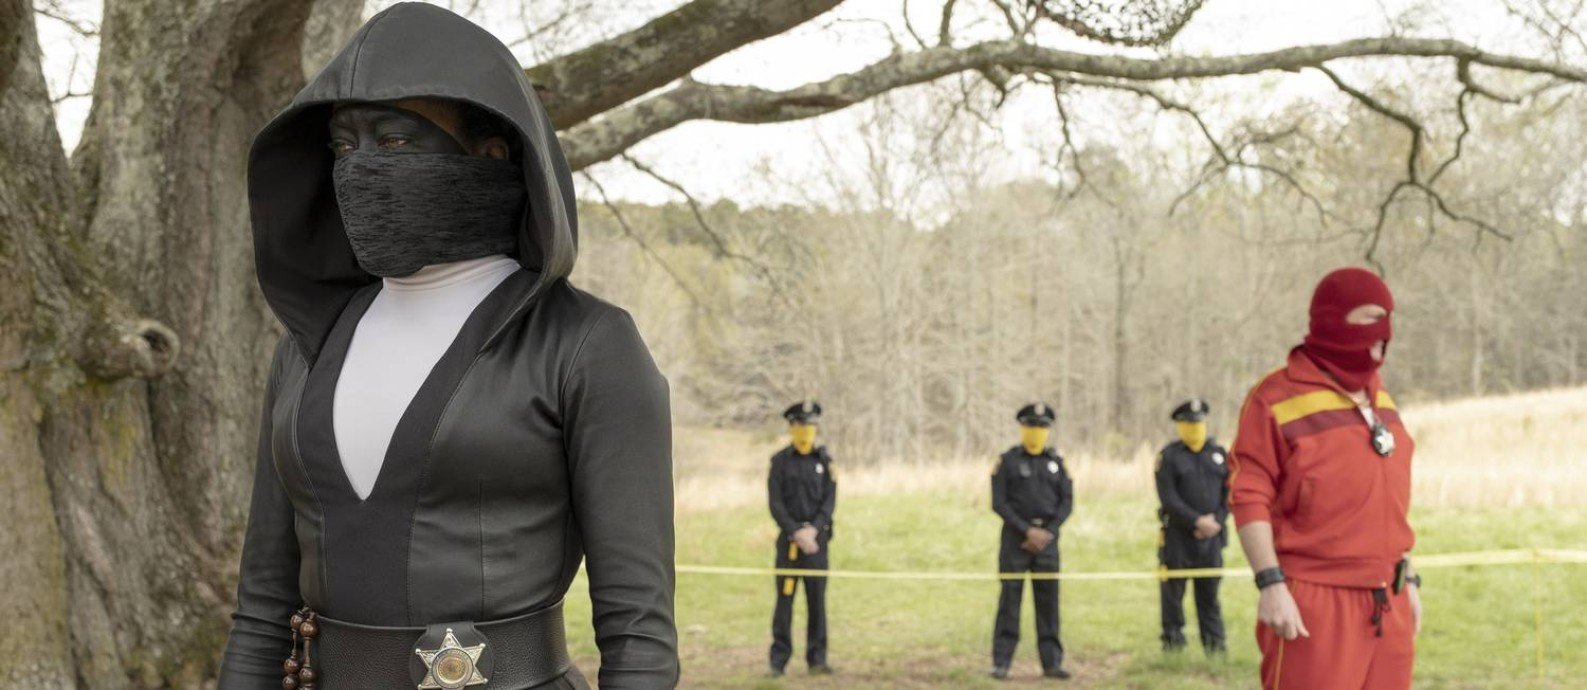 Watchmen, minissérie com maior quantidade de indicações ao Emmy 2020